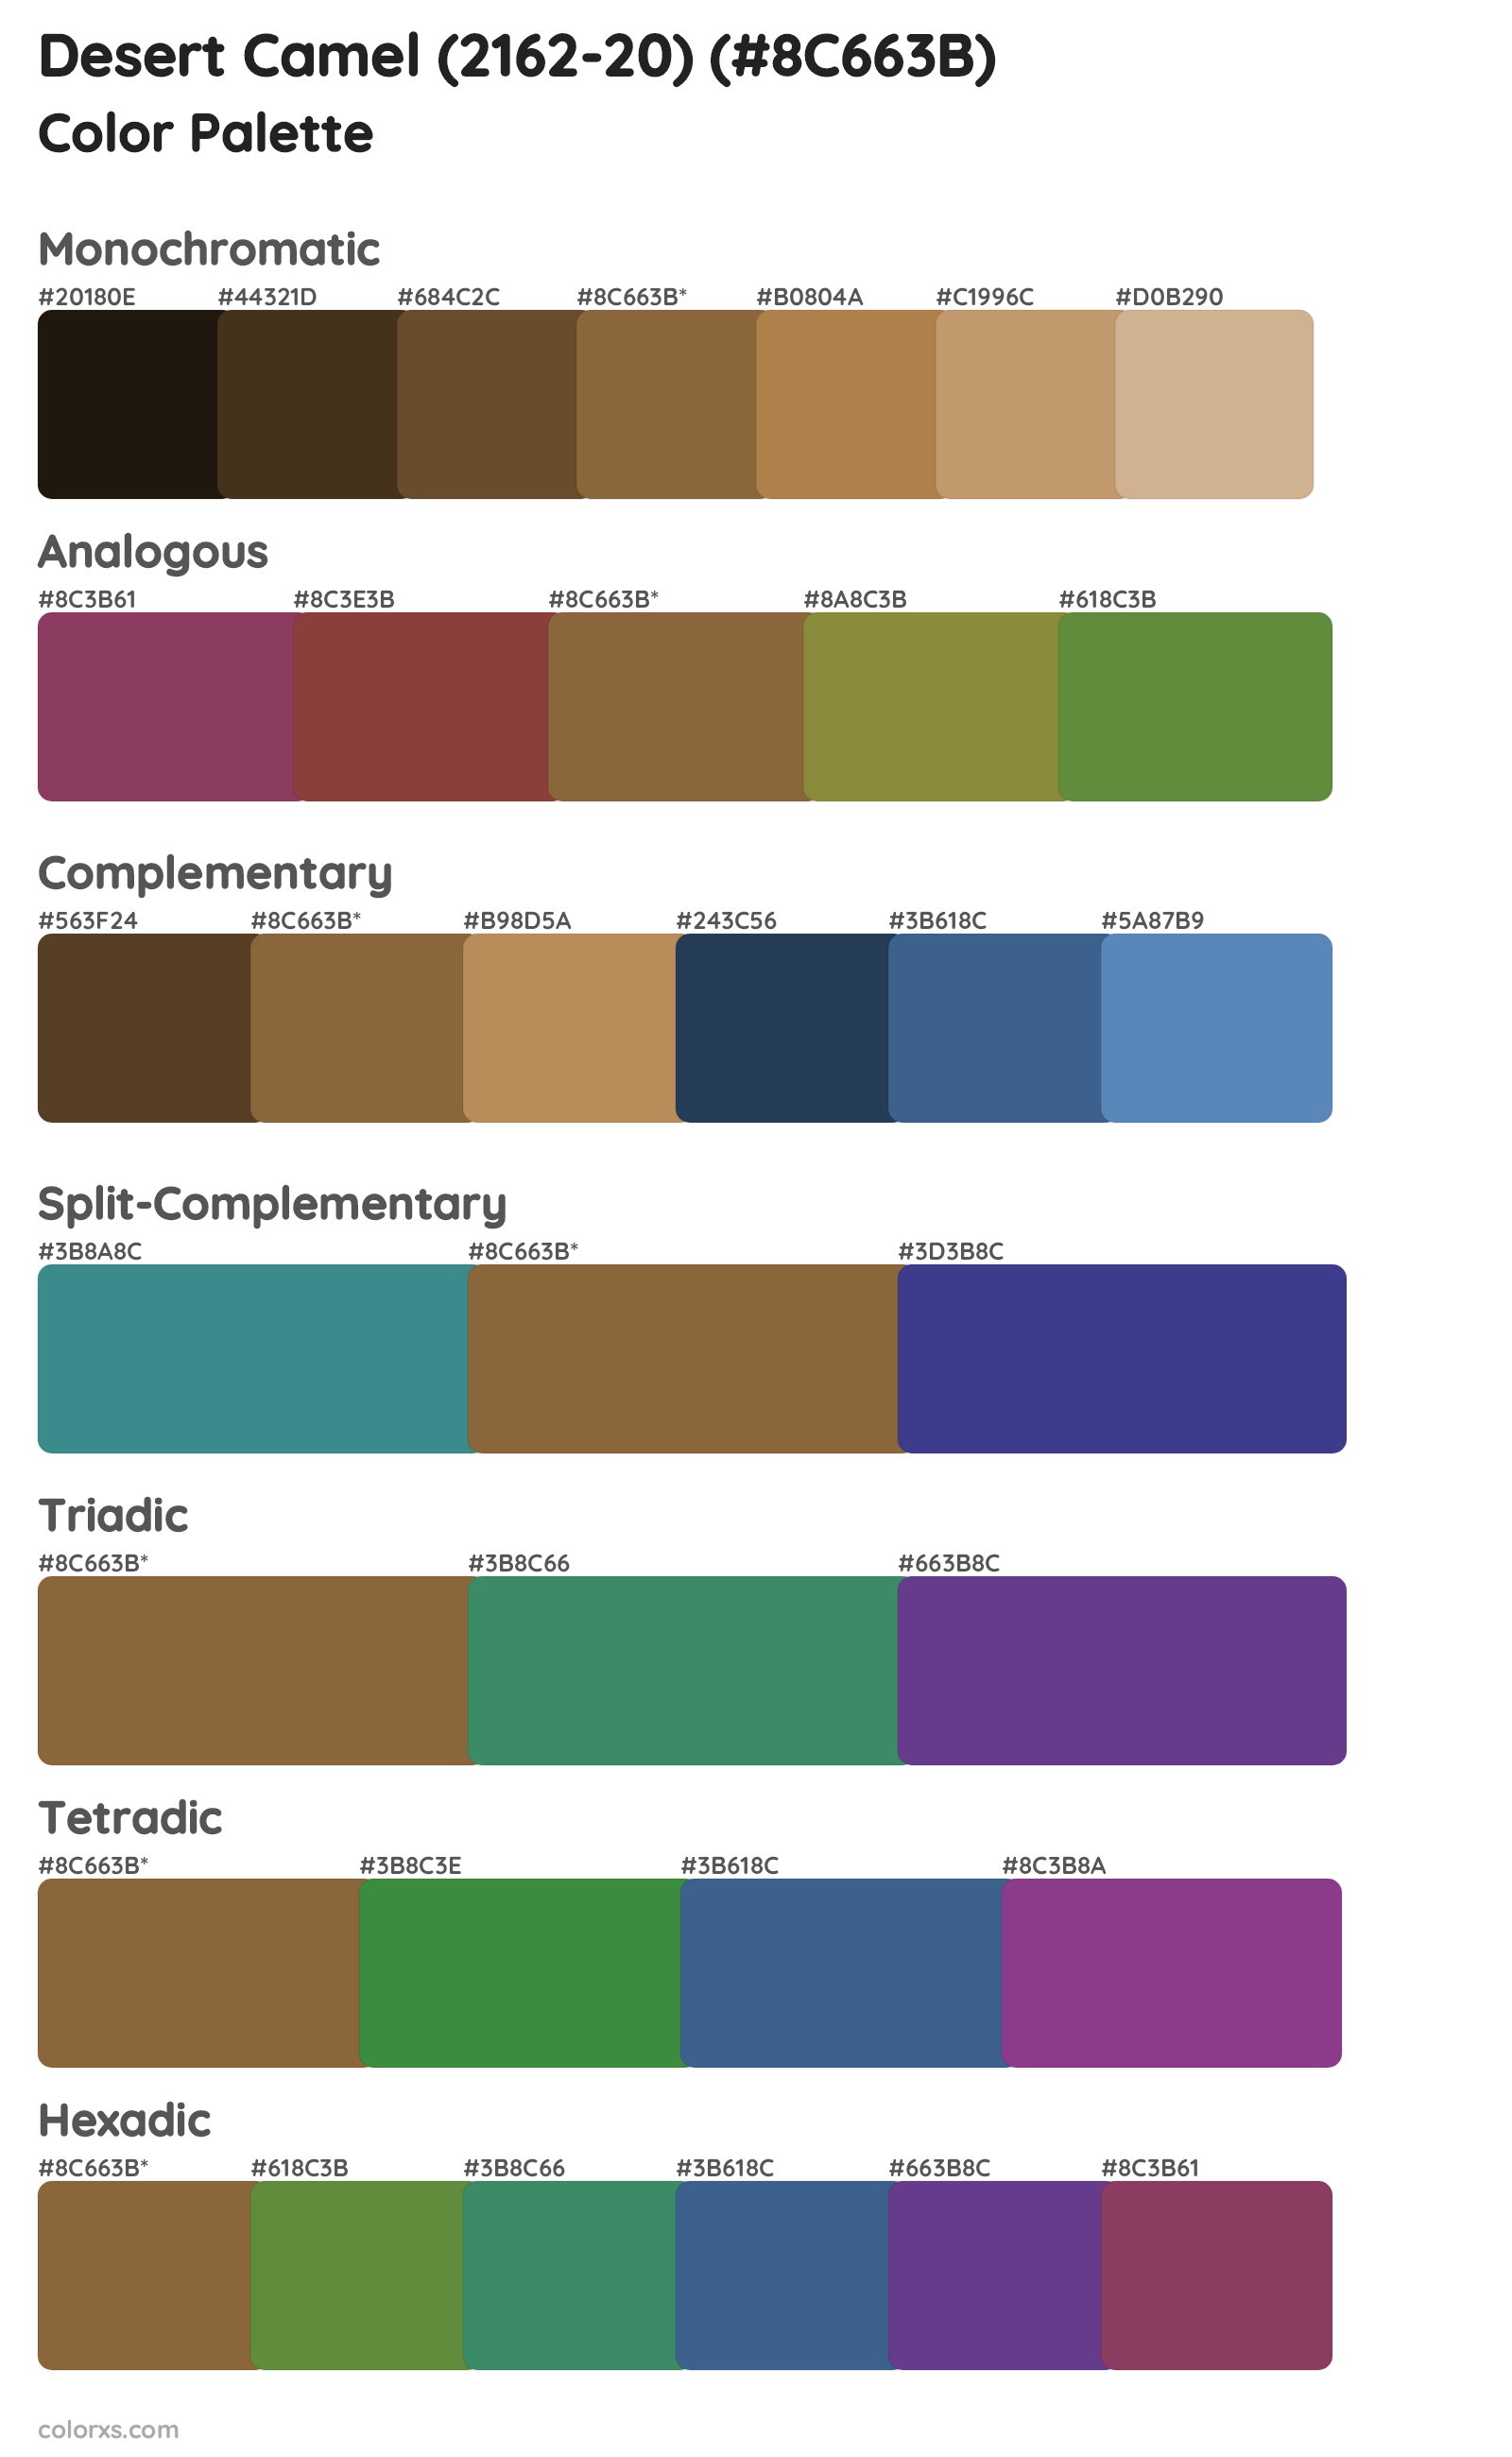 Desert Camel (2162-20) Color Scheme Palettes